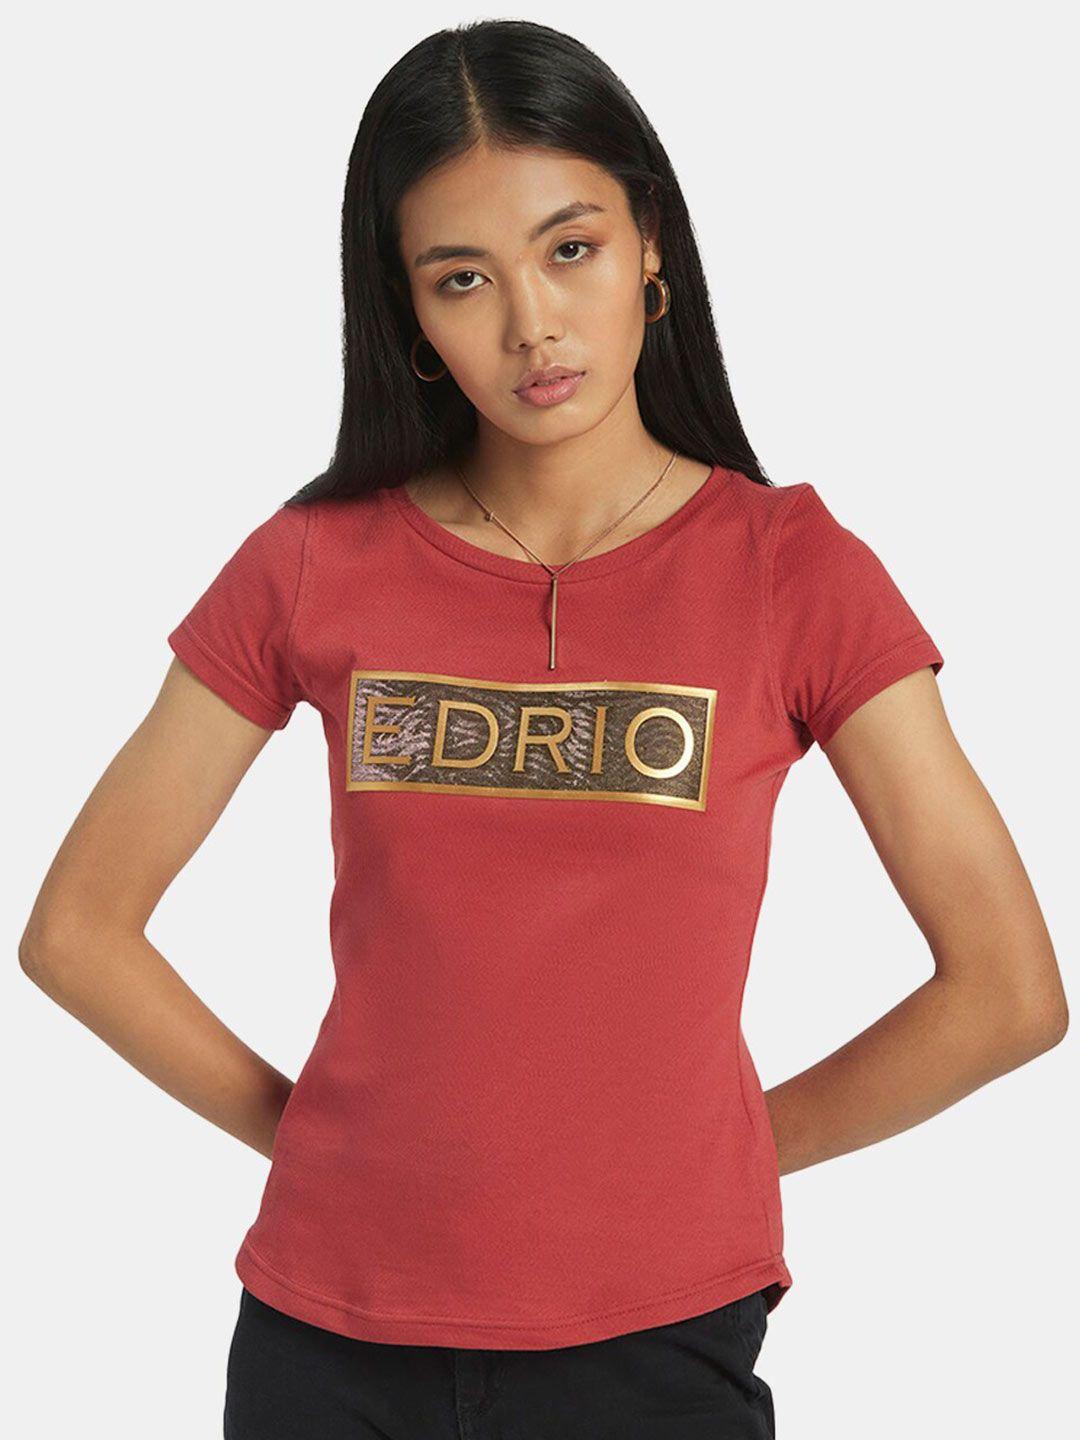 edrio women rust red brand logo printed t-shirt